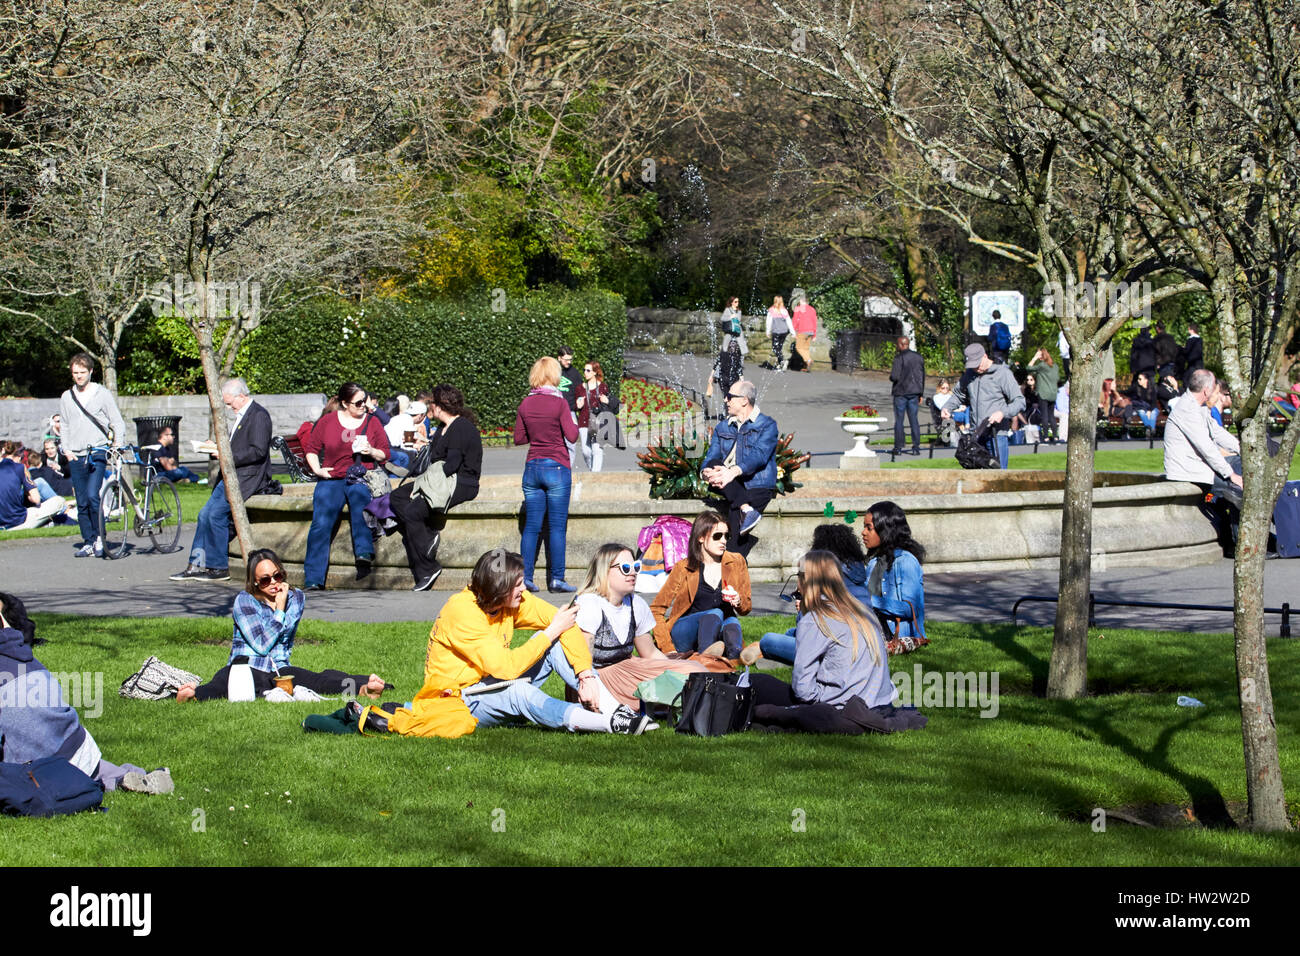 Le persone aventi il pranzo all'aperto su una soleggiata giornata di primavera in st stephens green park city center Dublino Repubblica di Irlanda Foto Stock